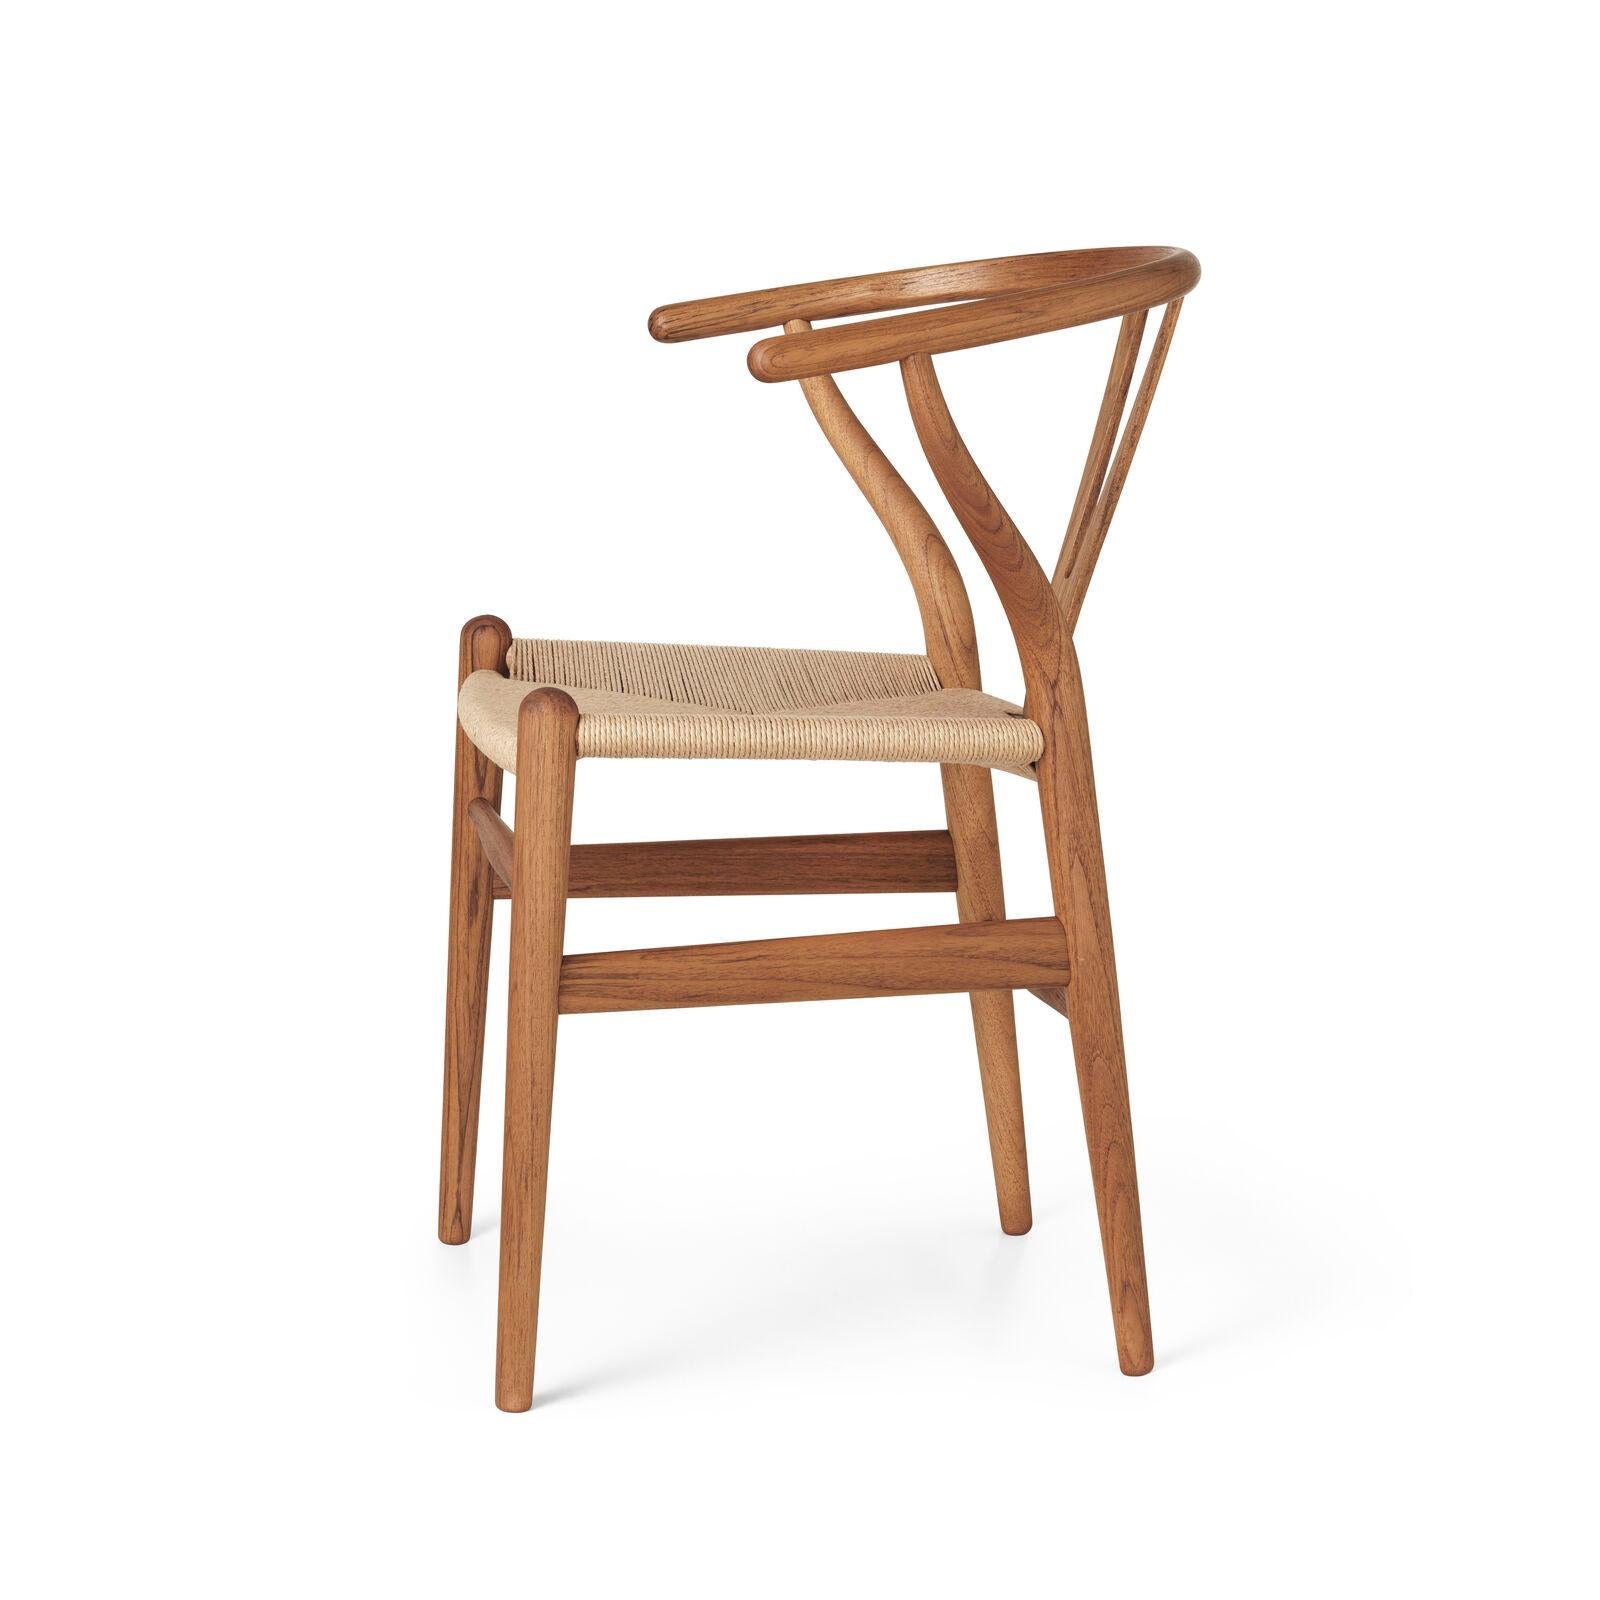 Das allererste Modell, das Hans J. Wegner 1949 exklusiv für Carl Hansen & Søn entwarf, der CH24 oder Wishbone Chair, wird seit seiner Einführung im Jahr 1950 kontinuierlich produziert.